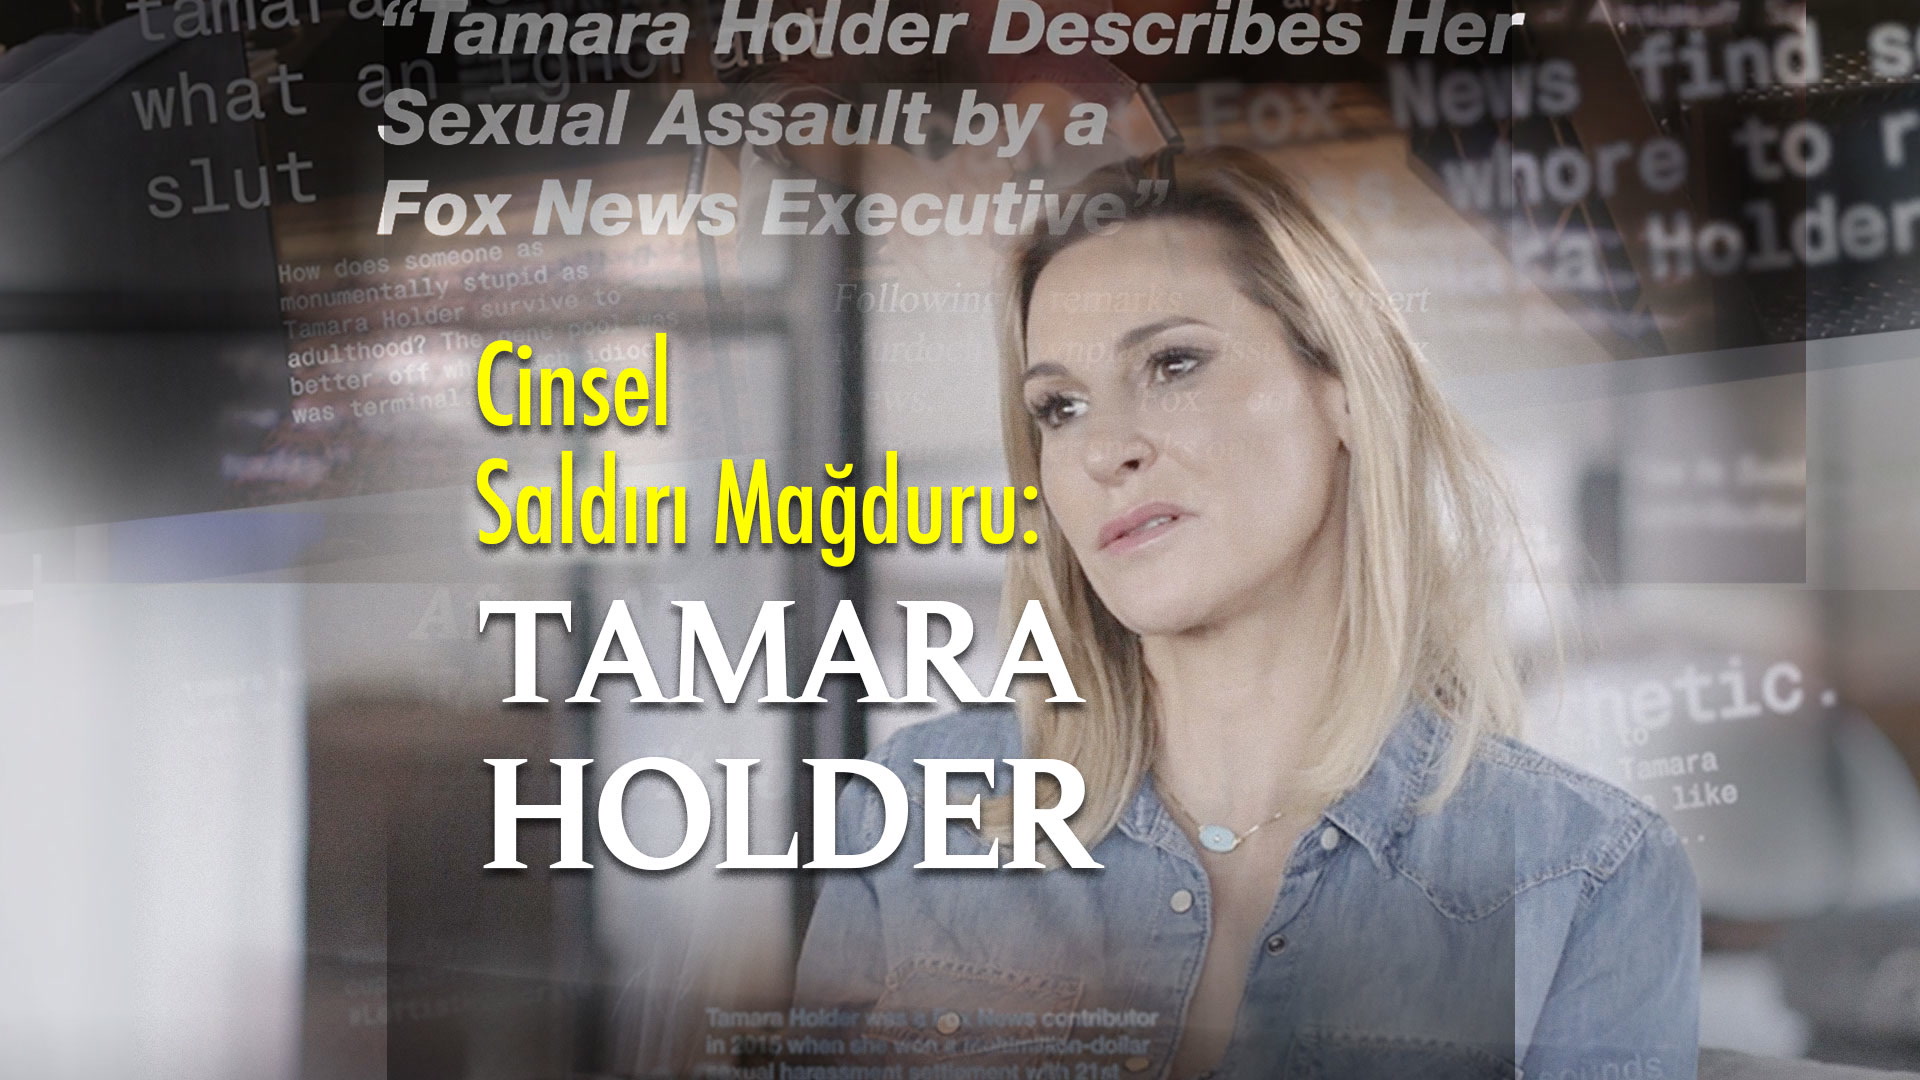 Cinsel saldırı mağduru, sunucu Tamara Holder